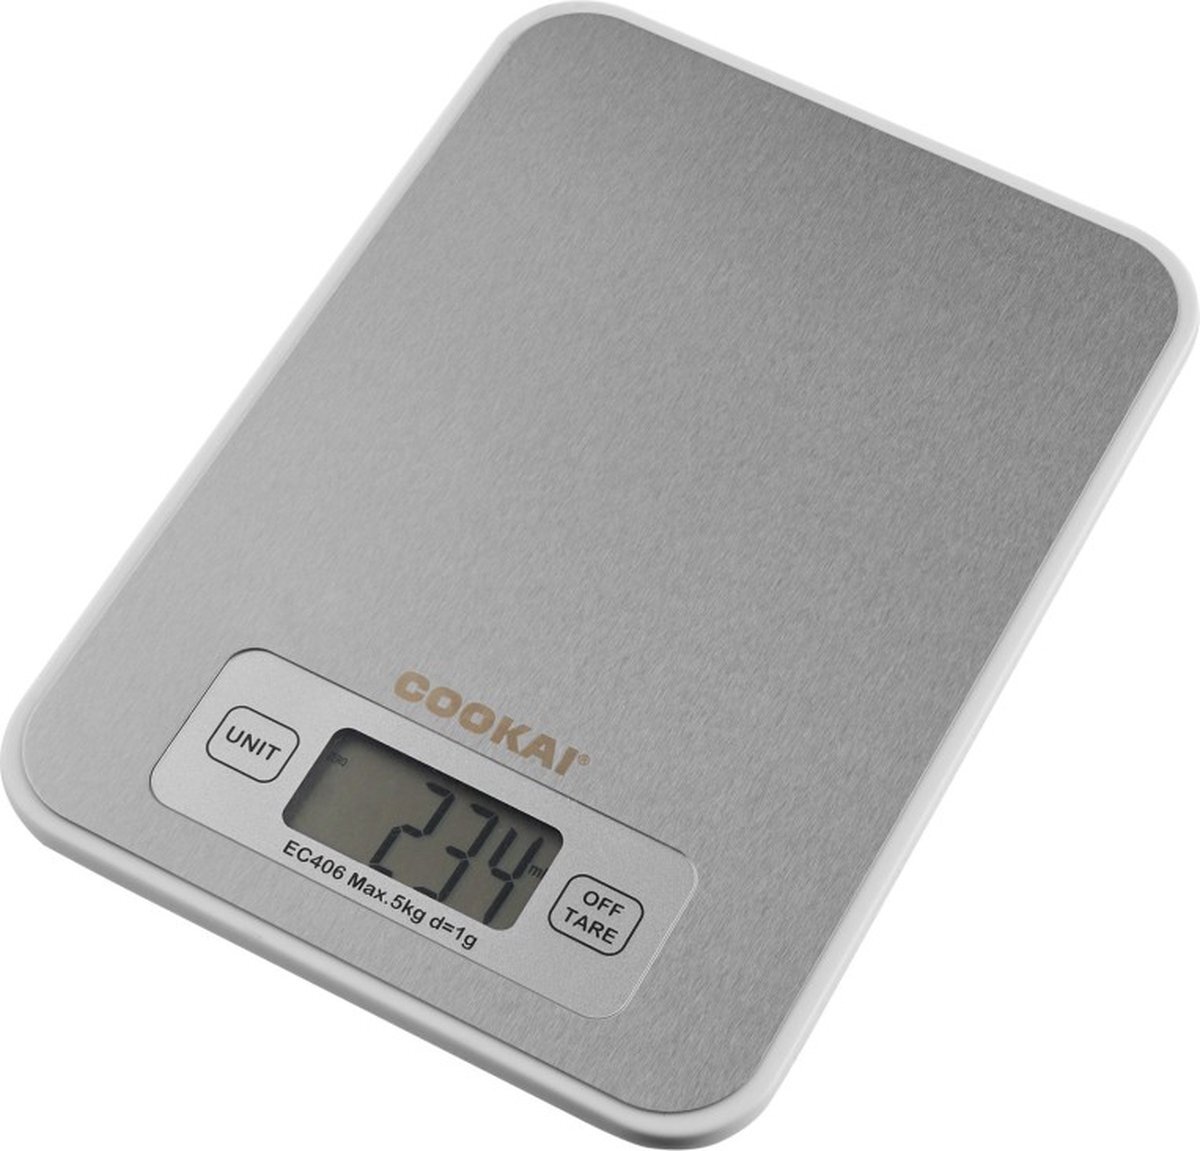 Cookai Digitale Weegschaal, RVS, 5 kg -